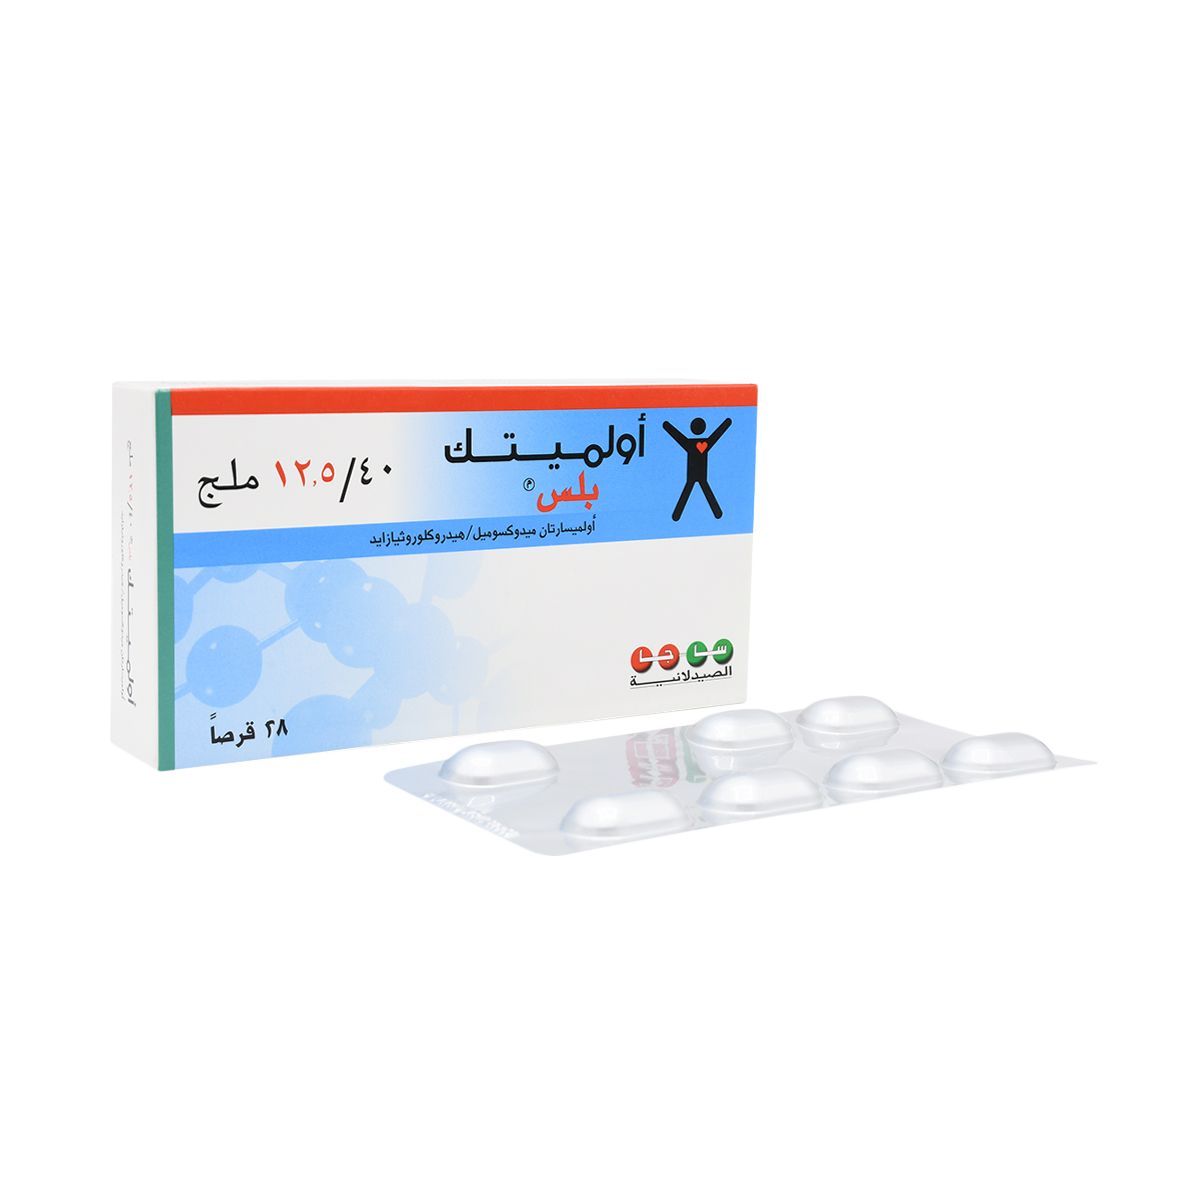 OLMETEC Olmetec Plus 40 mg/12.5 mg 28